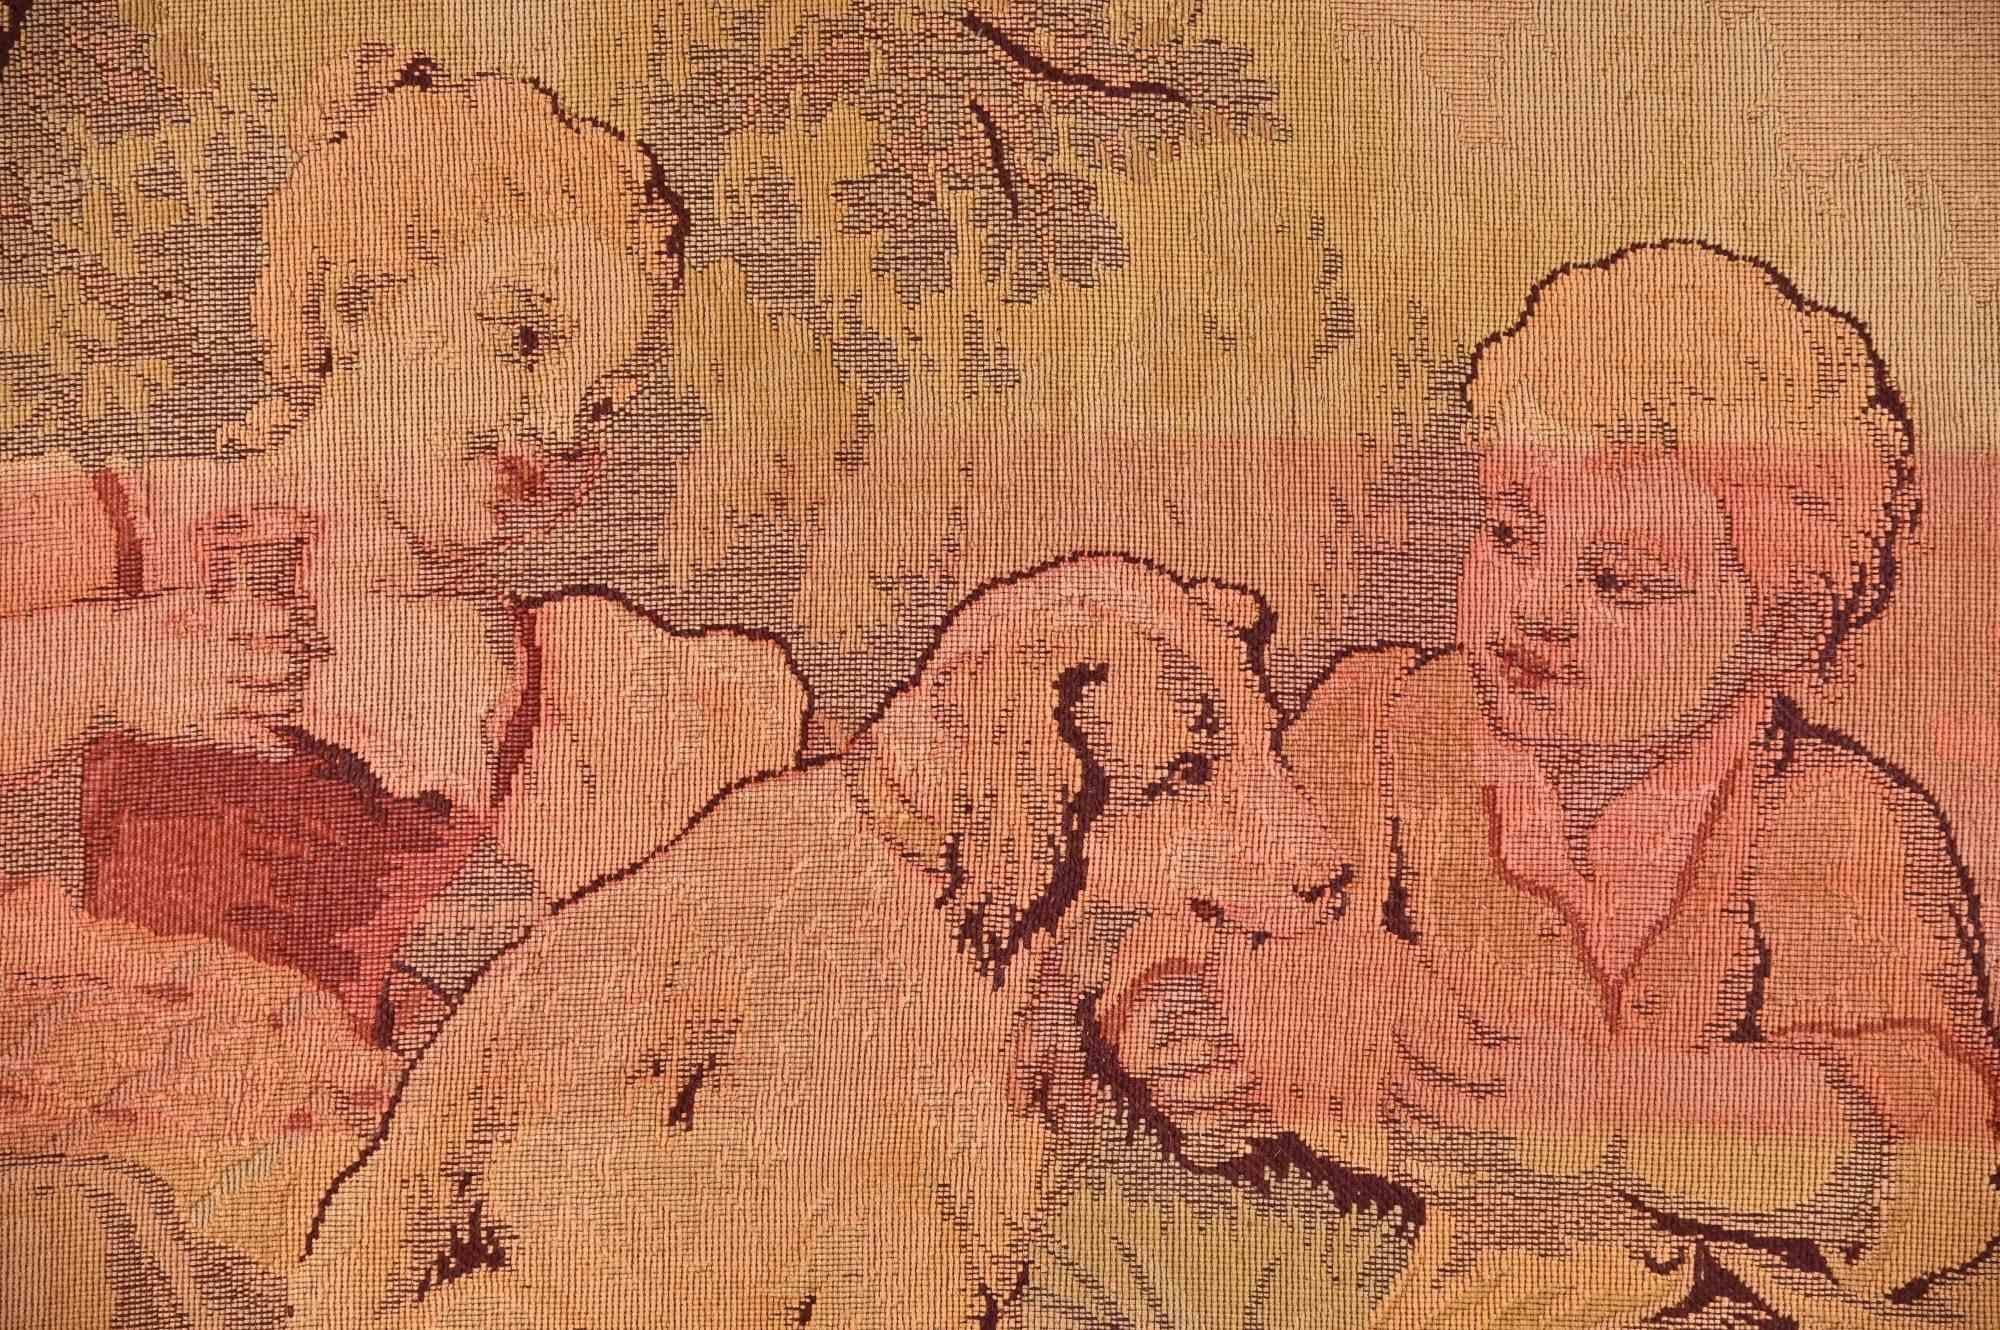 Scène bucolique est une tapisserie vintage réalisée dans les années 1950 en Italie. 

Enfants avec chiens avec motifs floraux sur les côtés.

Tissage audacieux dans les tons de brun, de rouge et de jaune. 

96x75 cm.

Bonnes conditions